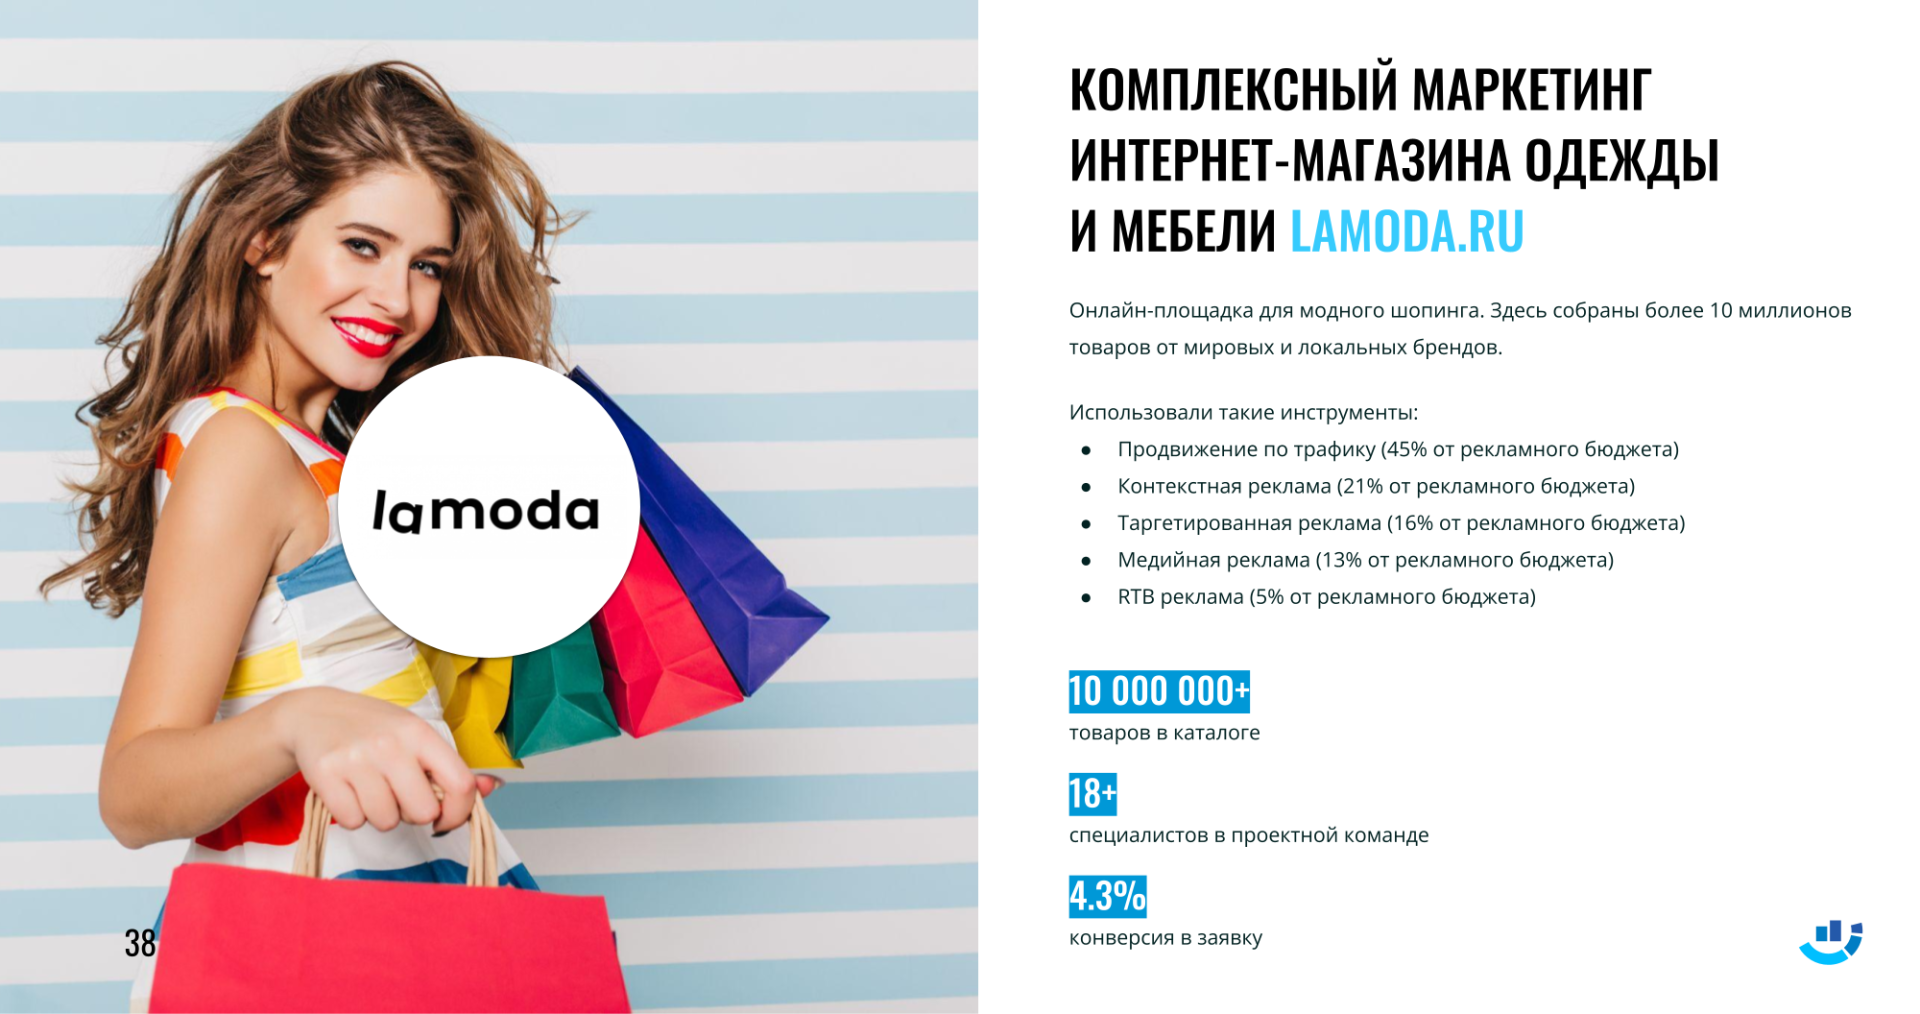 Кейс в нише одежда. Комплексный маркетинг для интернет-магазина Lamoda.ru. 